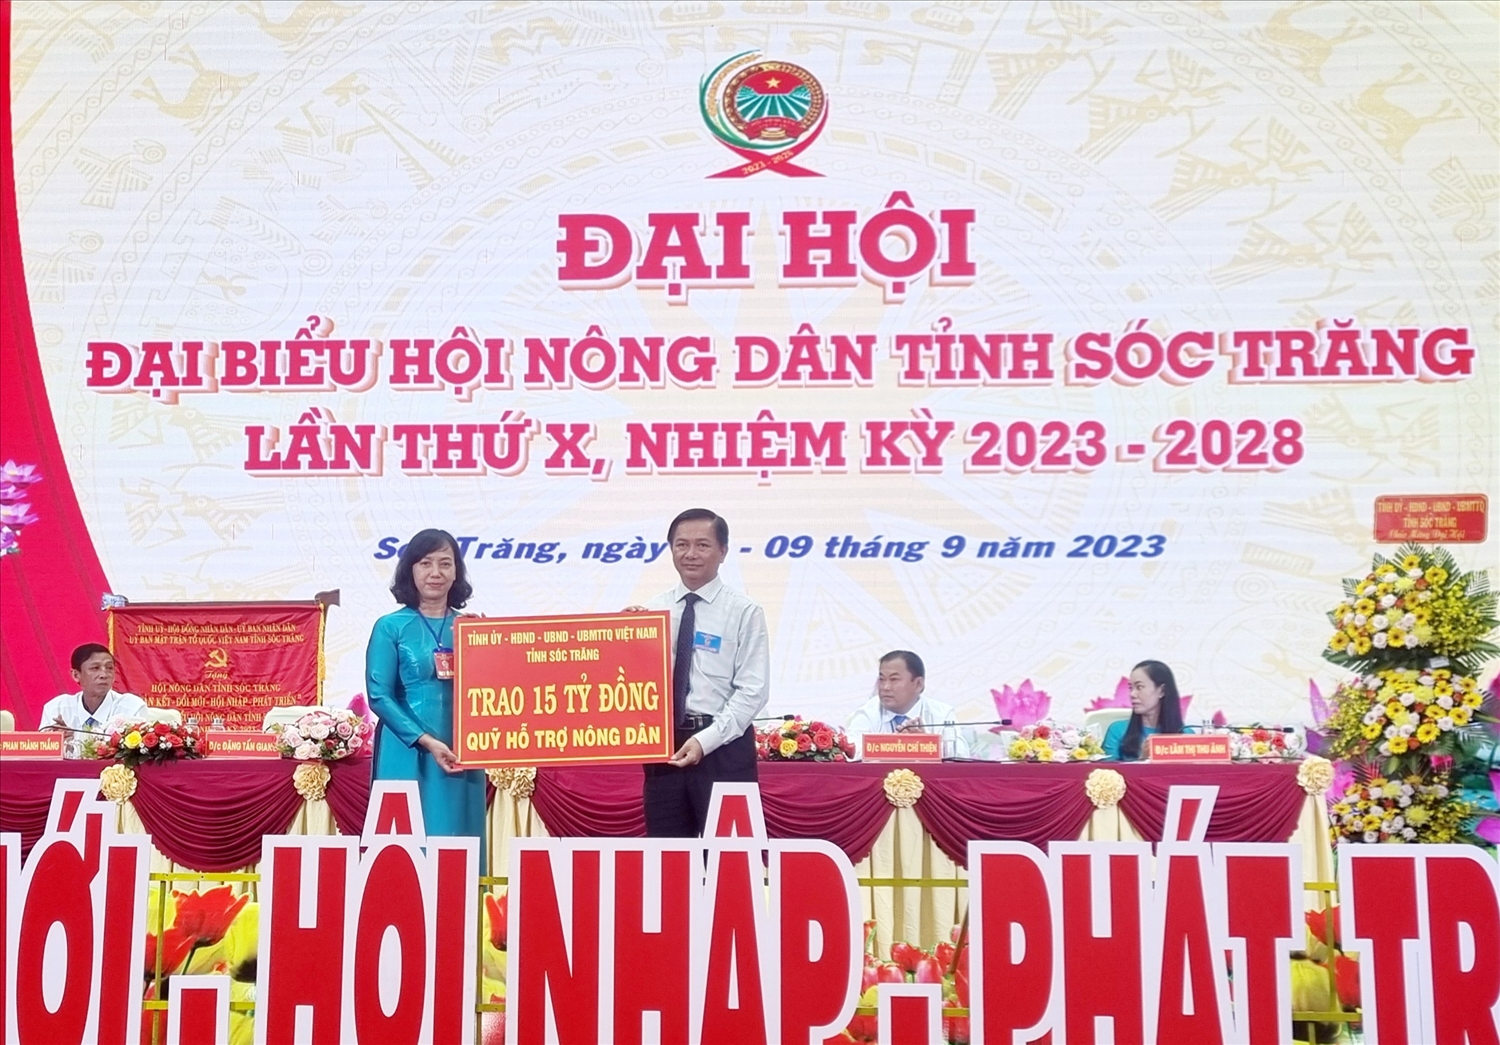 Ông Trần Văn Lâu, Chủ tịch UBND tỉnh Sóc Trăng trao bảng tượng trưng quỹ hỗ trợ nông dân đến bà Phạm Lệ Lam, Chủ tịch HND tỉnh 